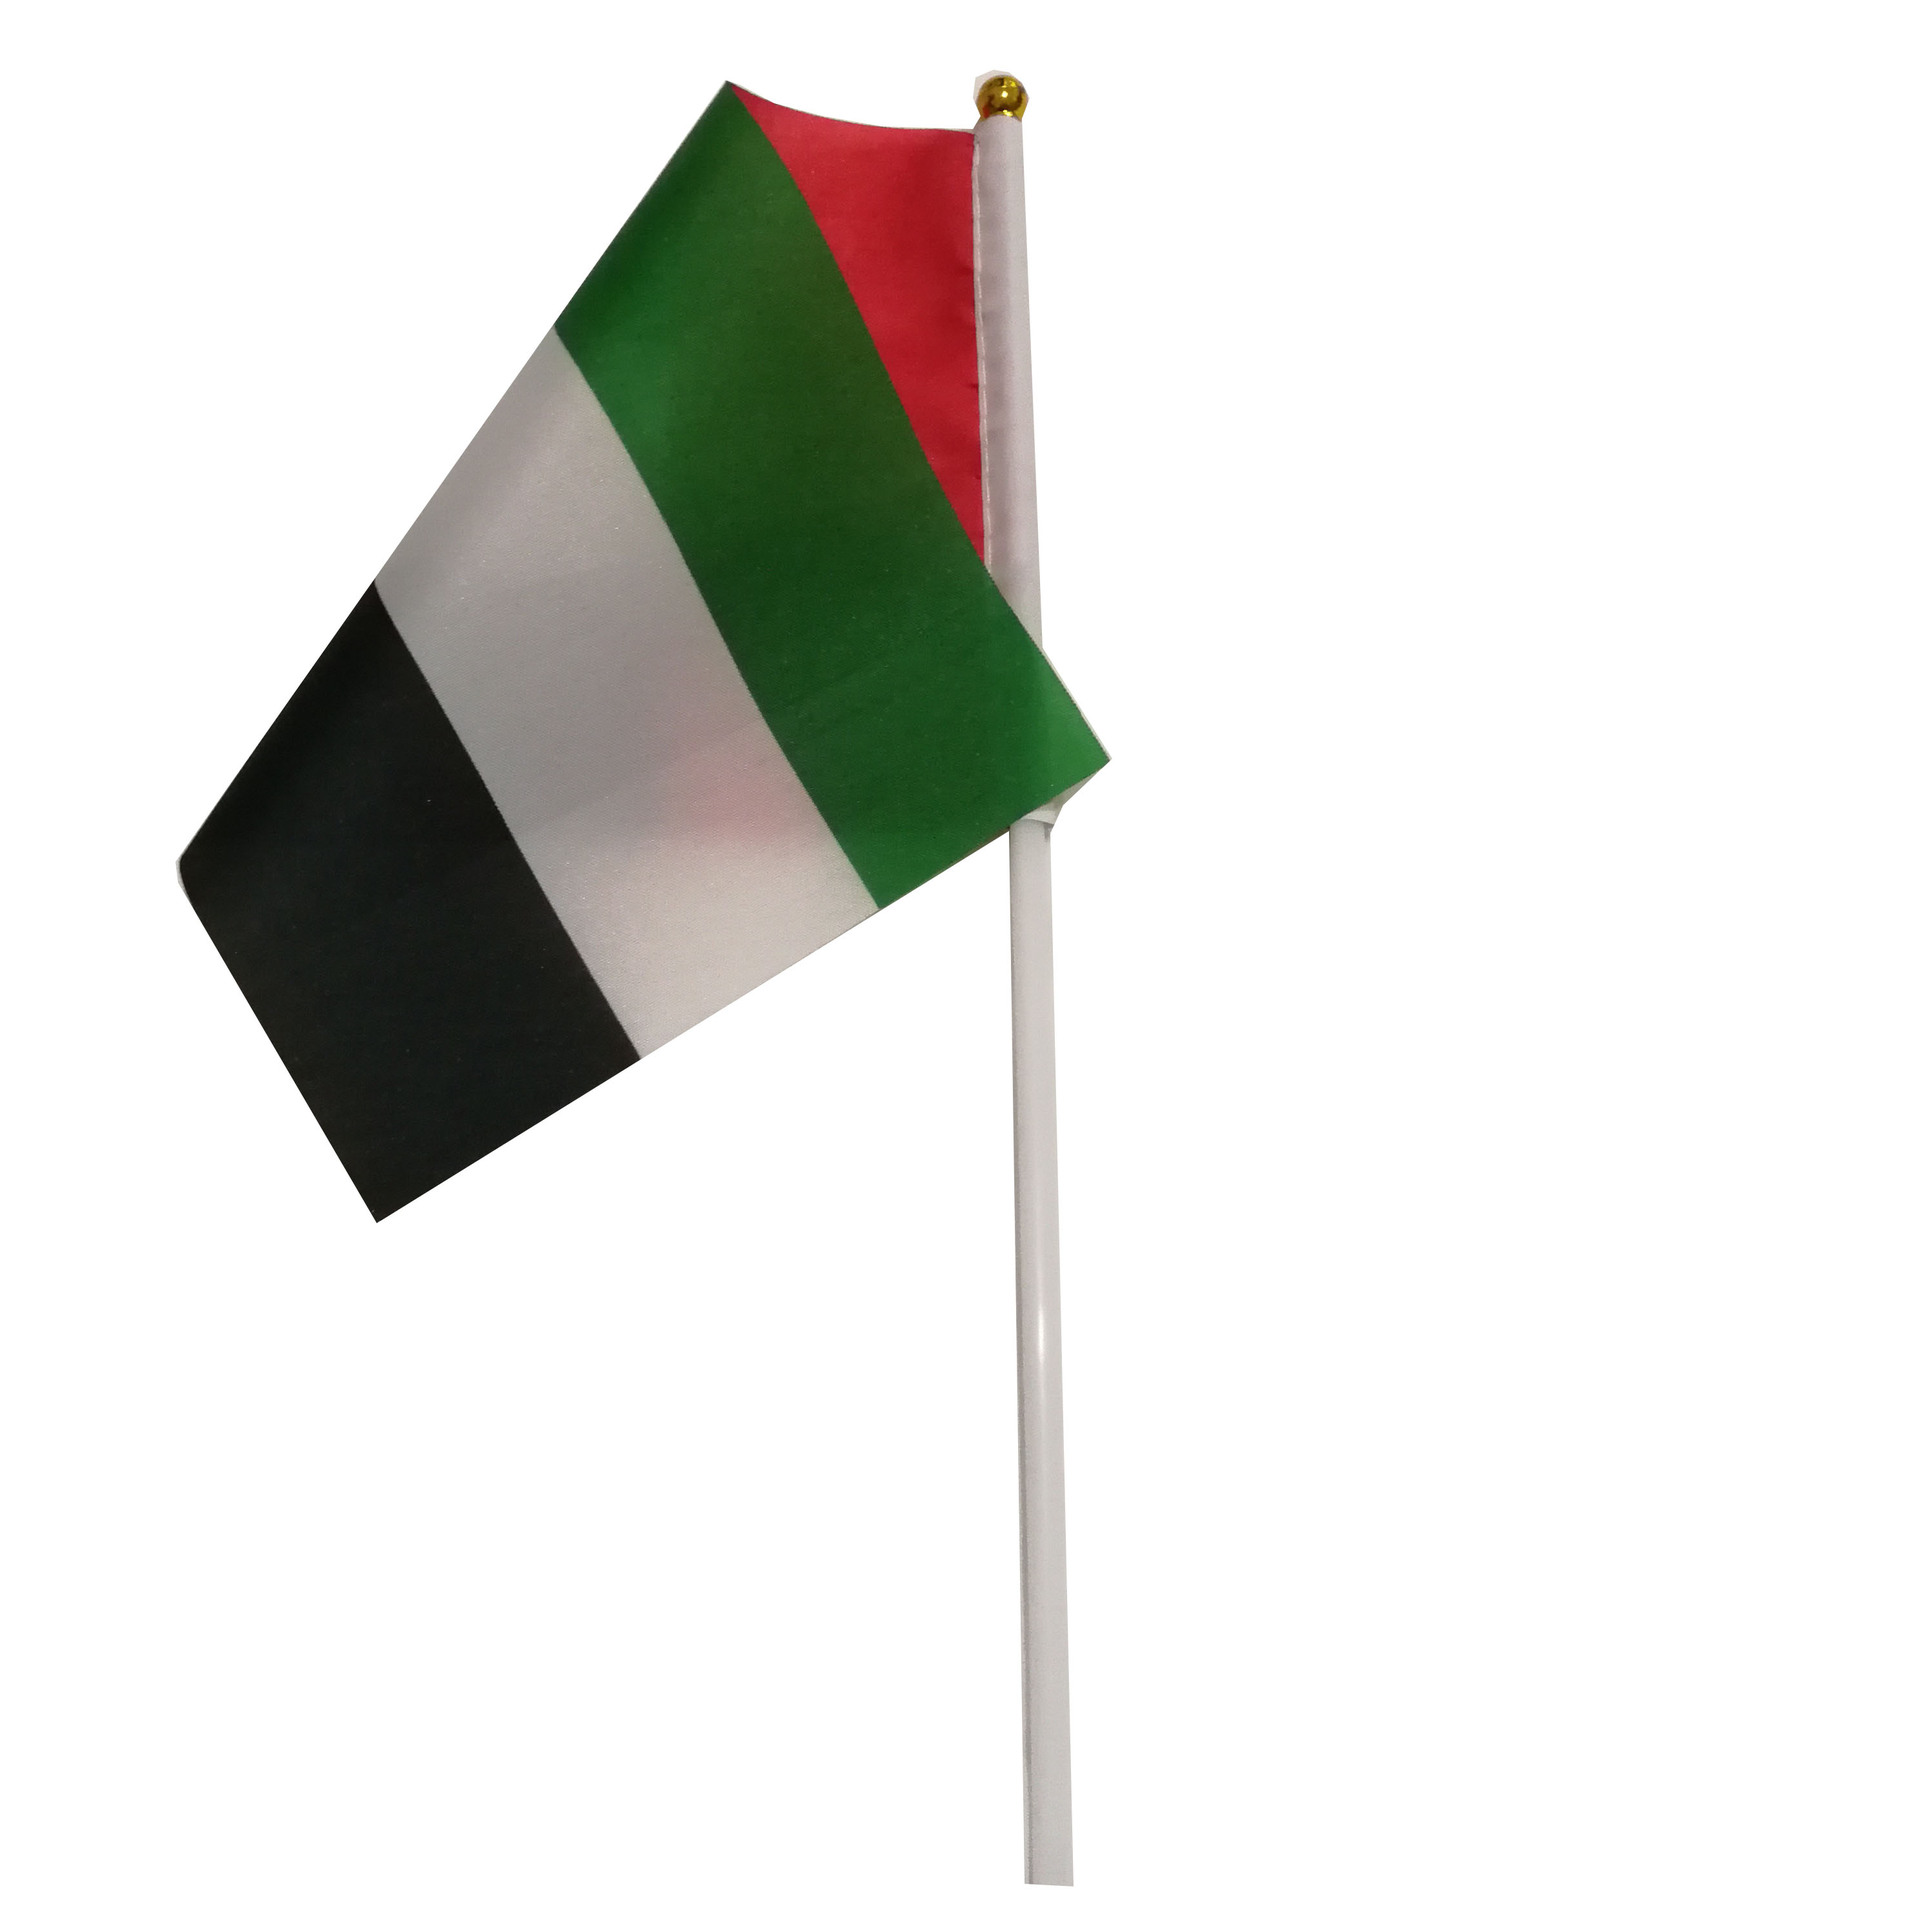 阿联酋国旗图案图片